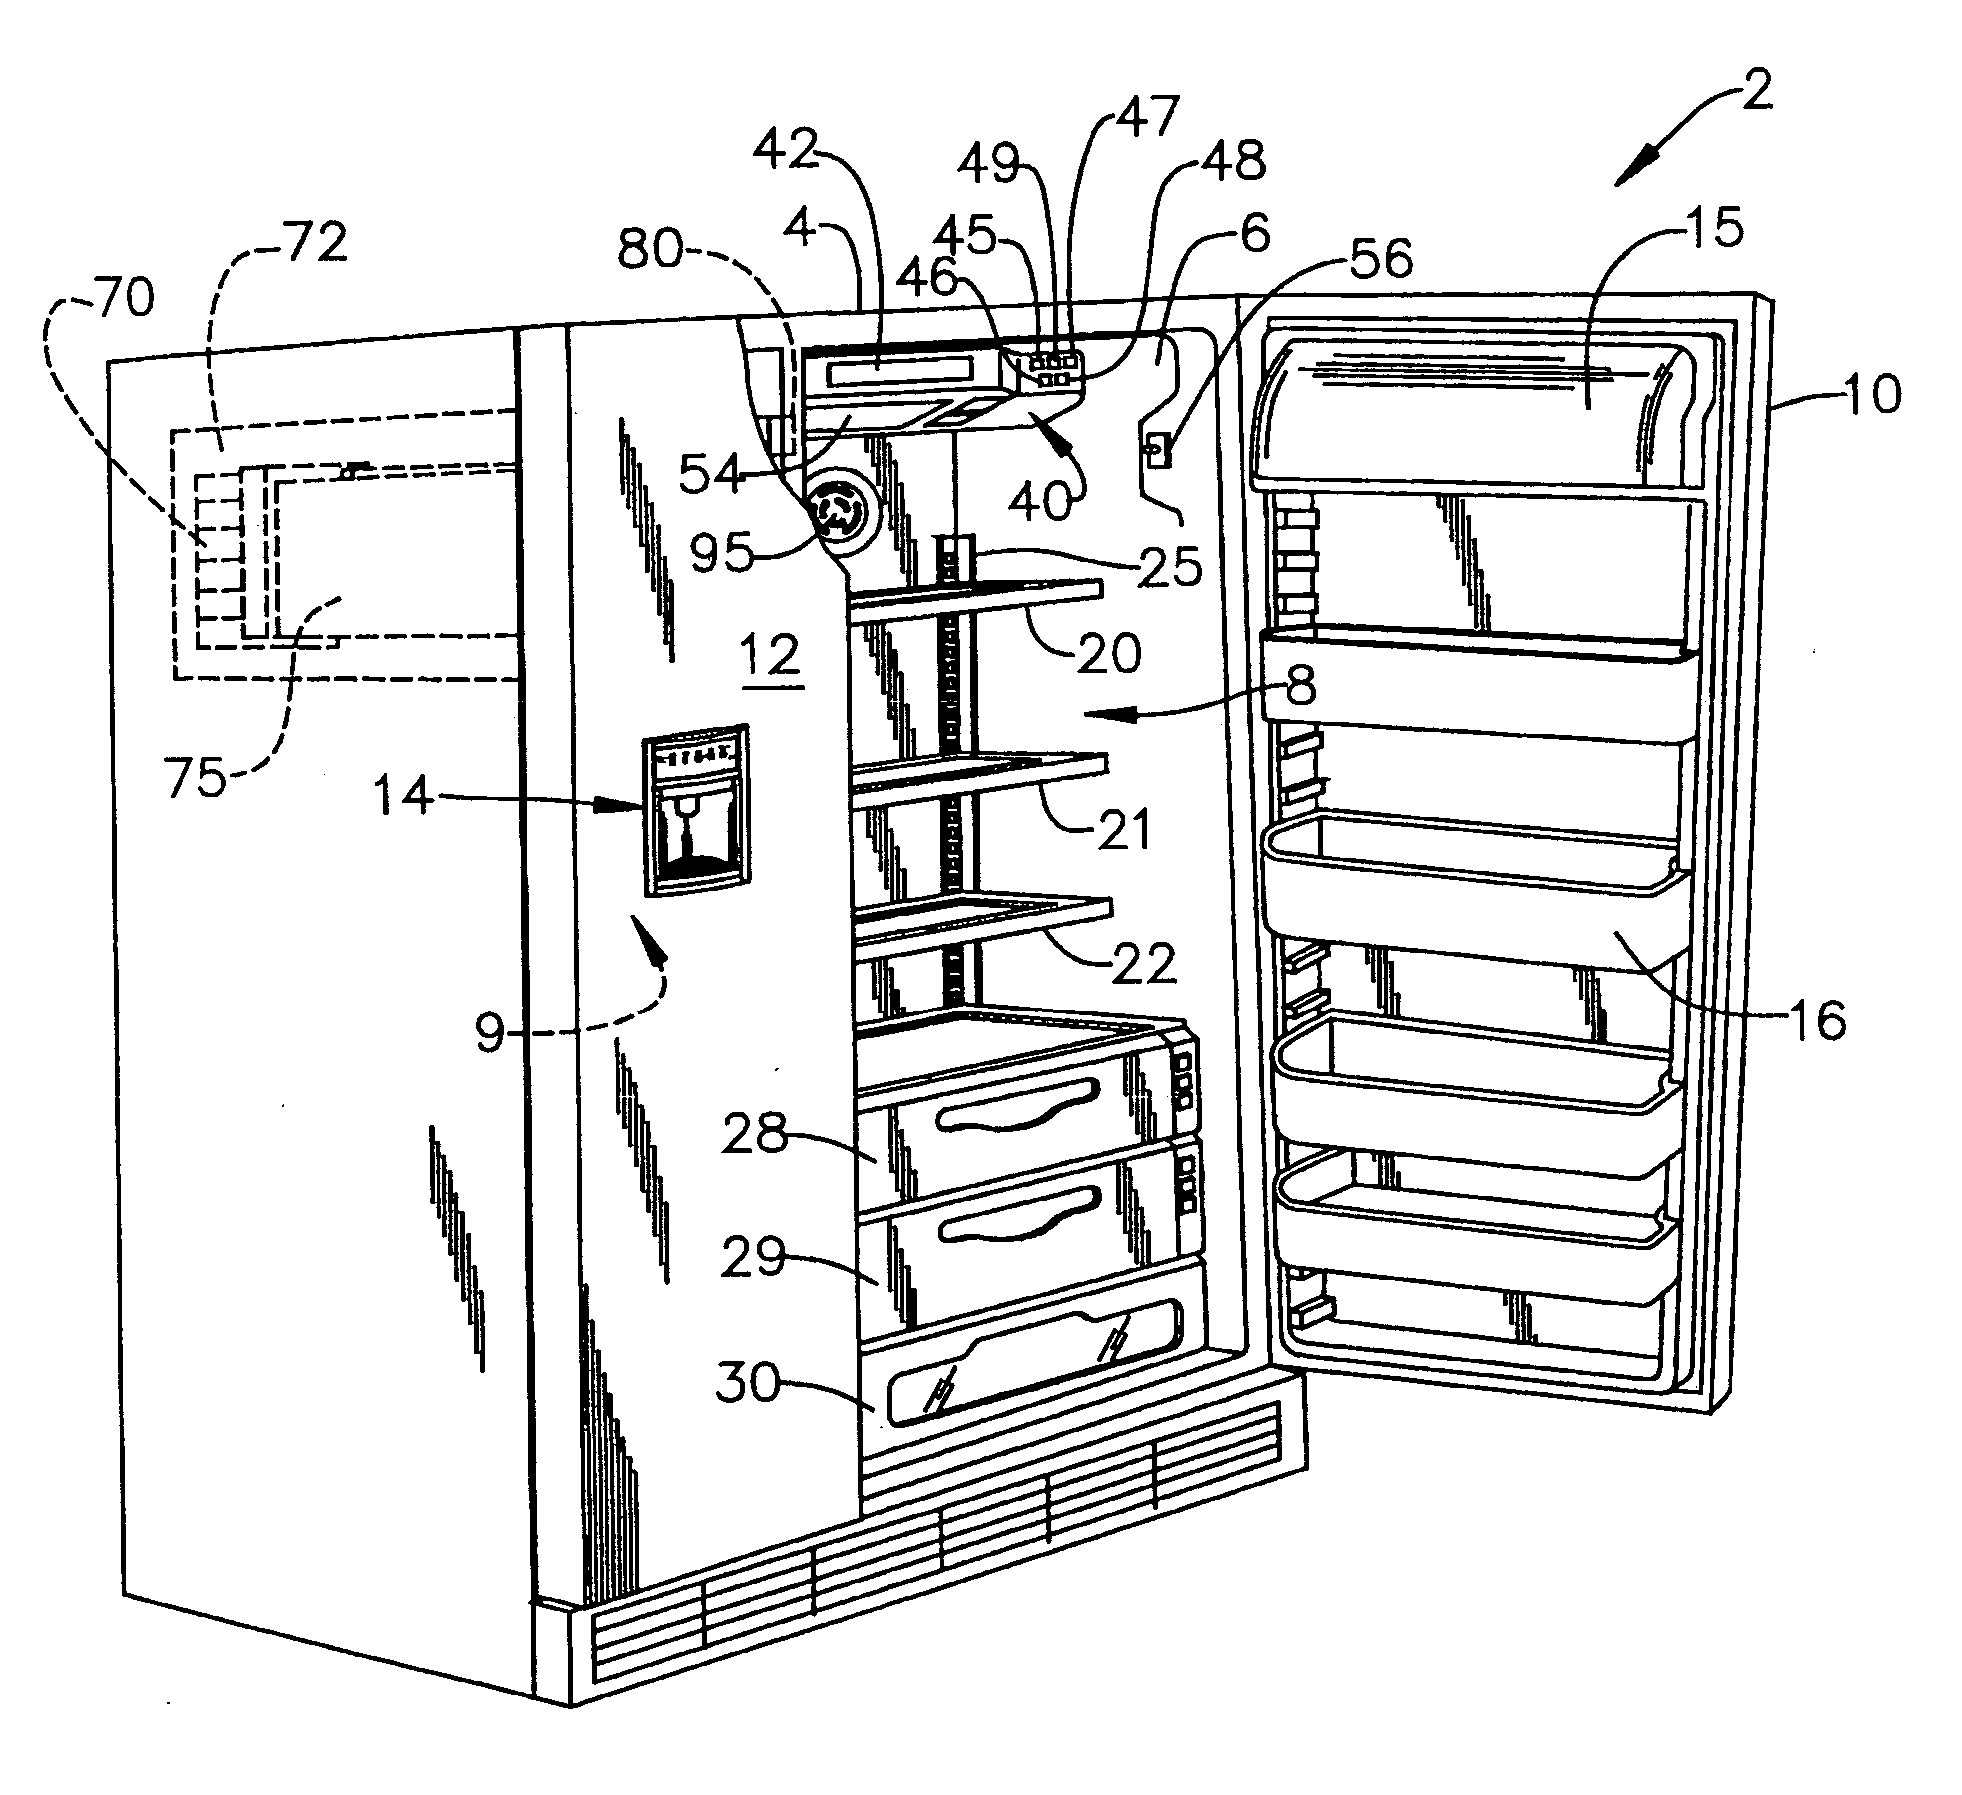 Control for a refrigerator